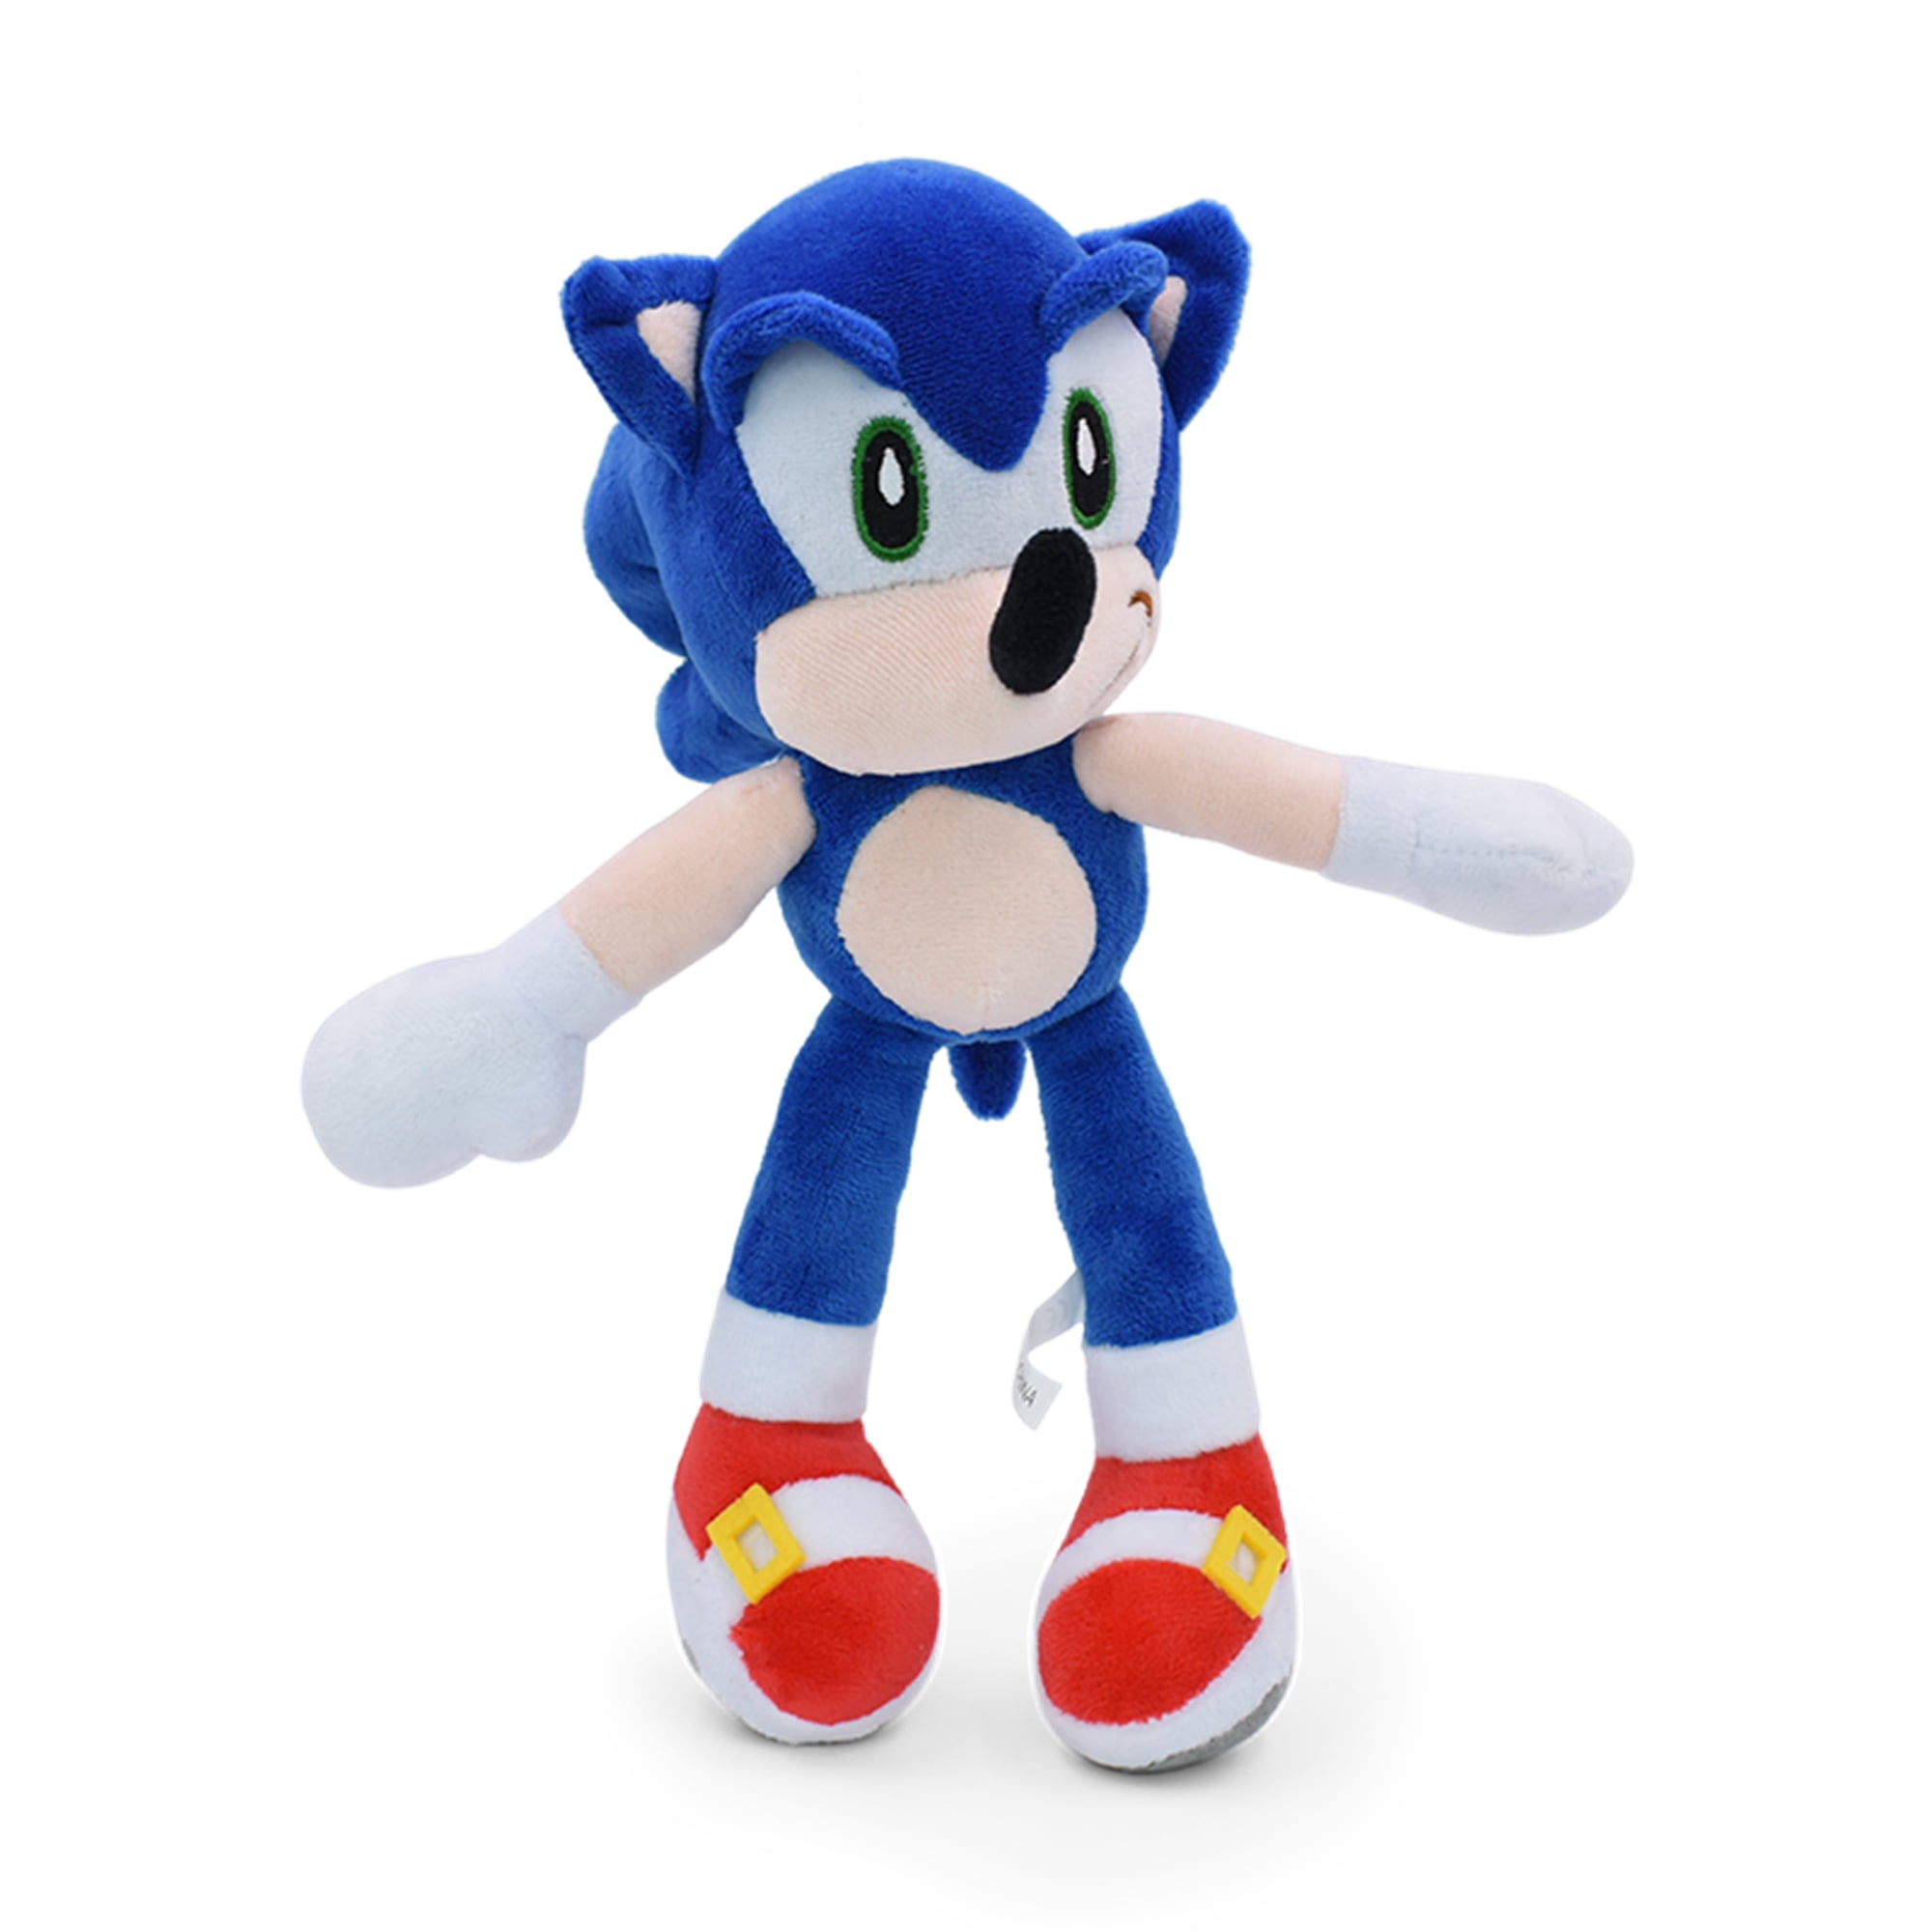 Sonic the Hedgehog Plush Soft Toy Doll Stuffed Animal Teddy 11"